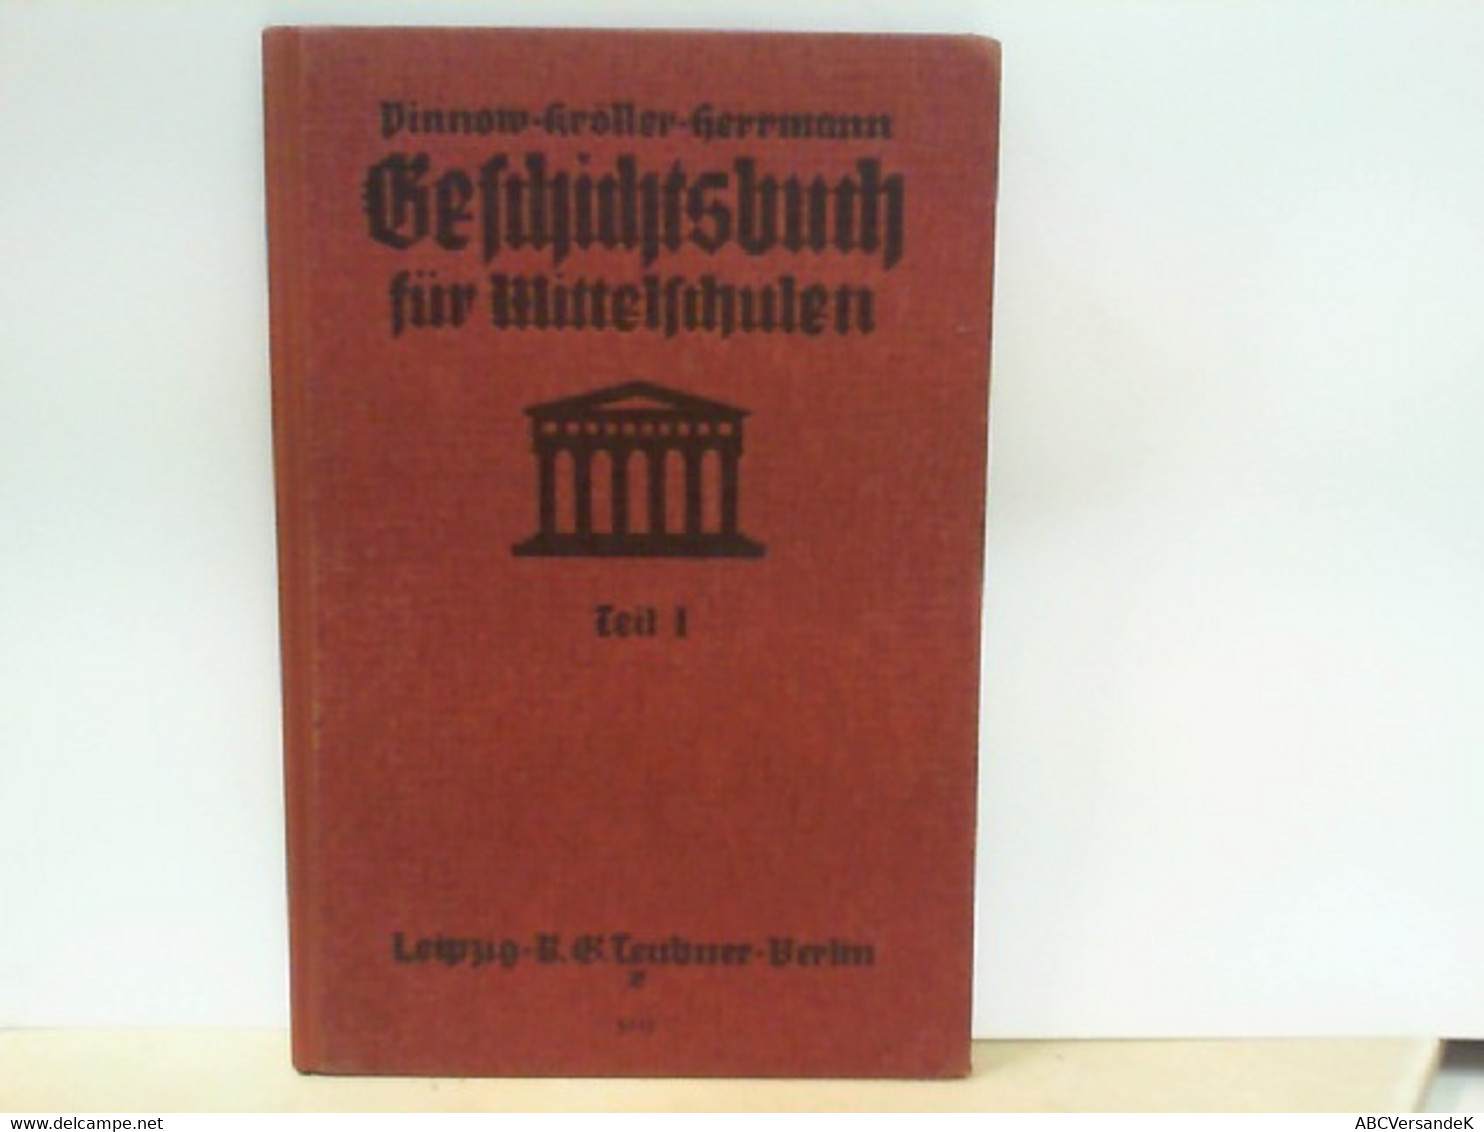 Pinnows Geschichtsbuch Für Mittelschulen - Teil 1 : Alte Geschichte - Schoolboeken